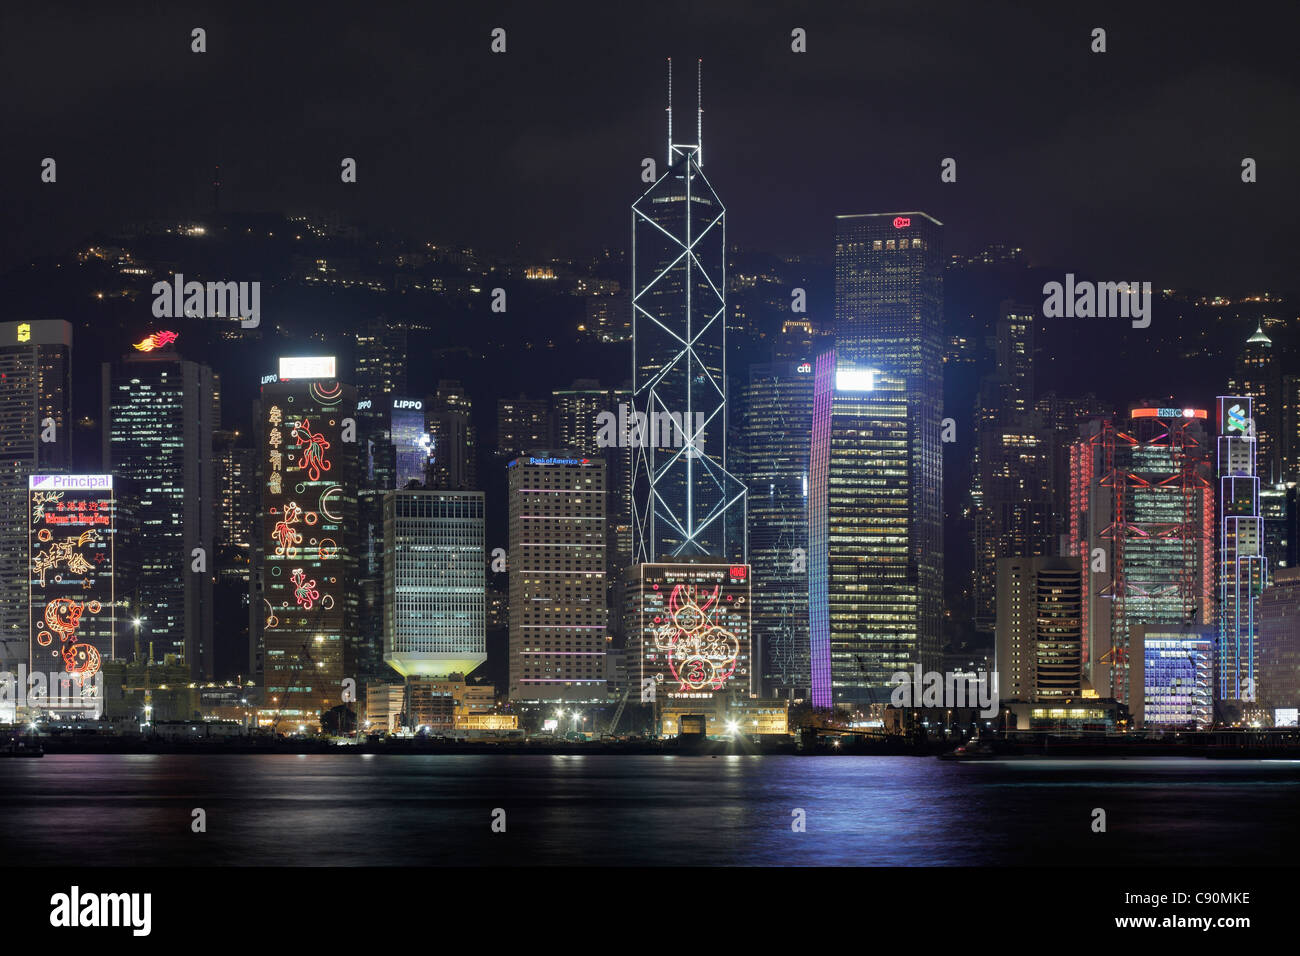 Hong Kong Skyline with Bank of China Tower at night, Hong Kong, China Stock Photo